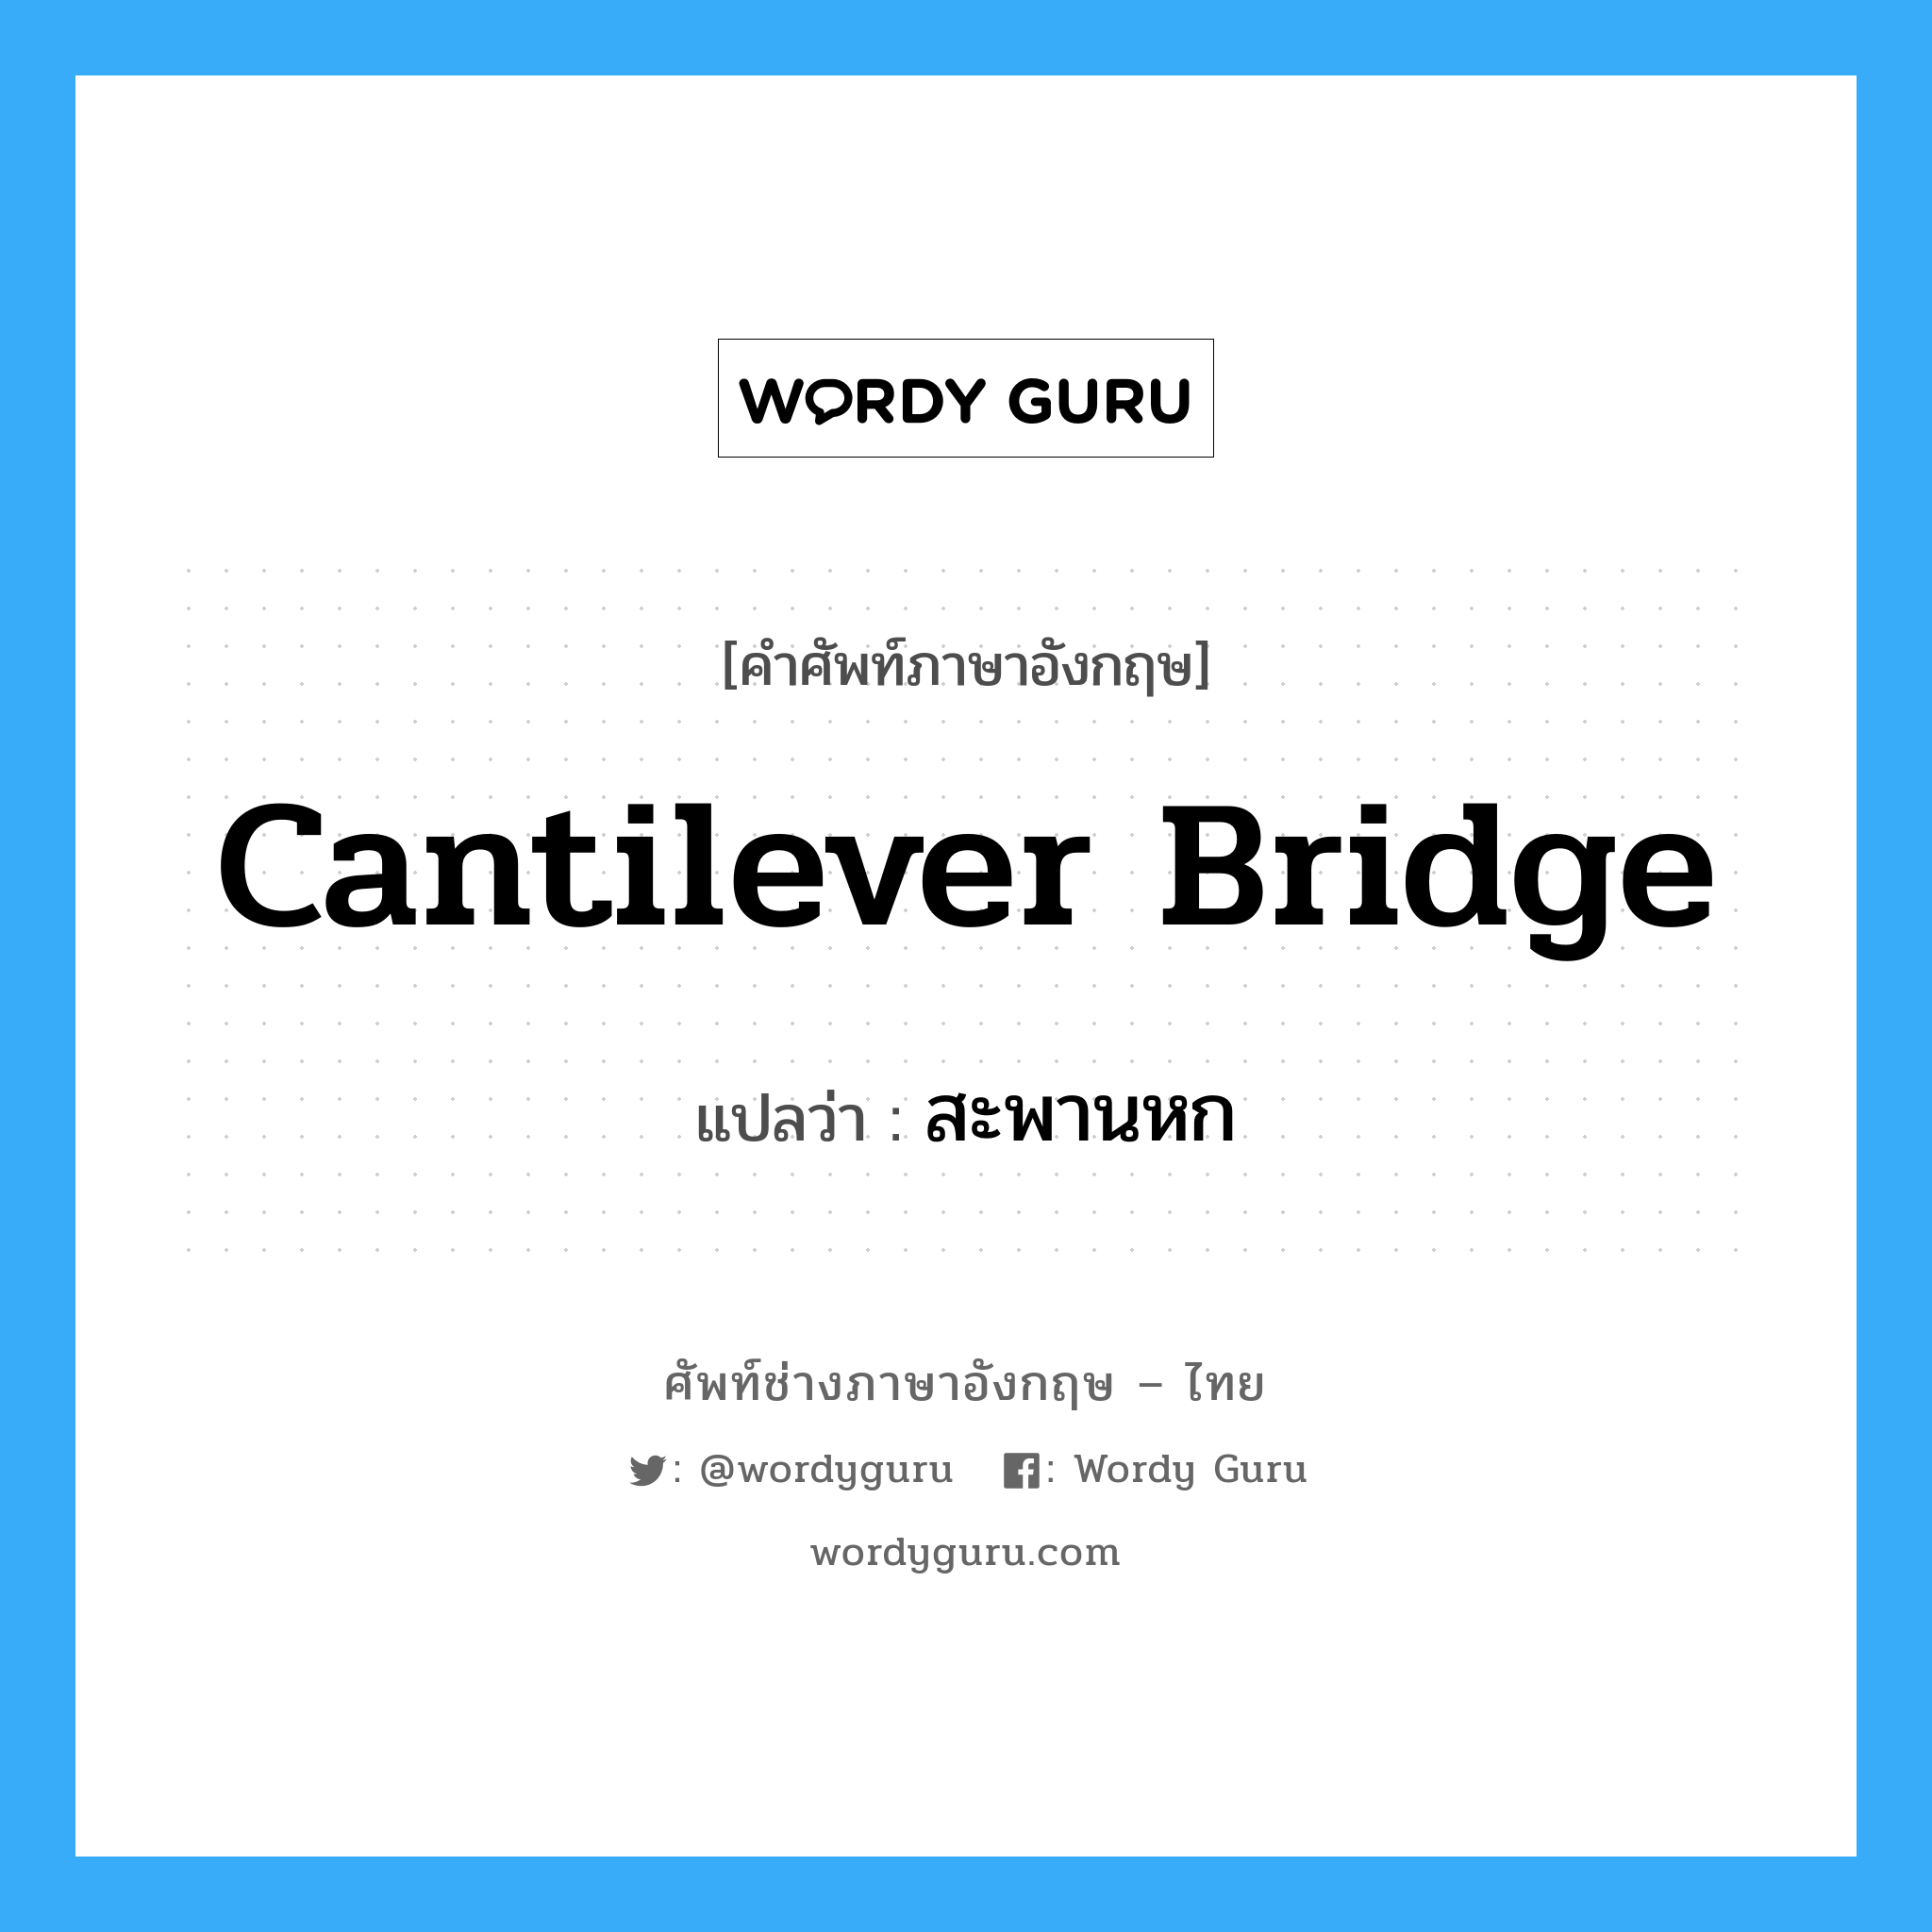 สะพานหก ภาษาอังกฤษ?, คำศัพท์ช่างภาษาอังกฤษ - ไทย สะพานหก คำศัพท์ภาษาอังกฤษ สะพานหก แปลว่า cantilever bridge